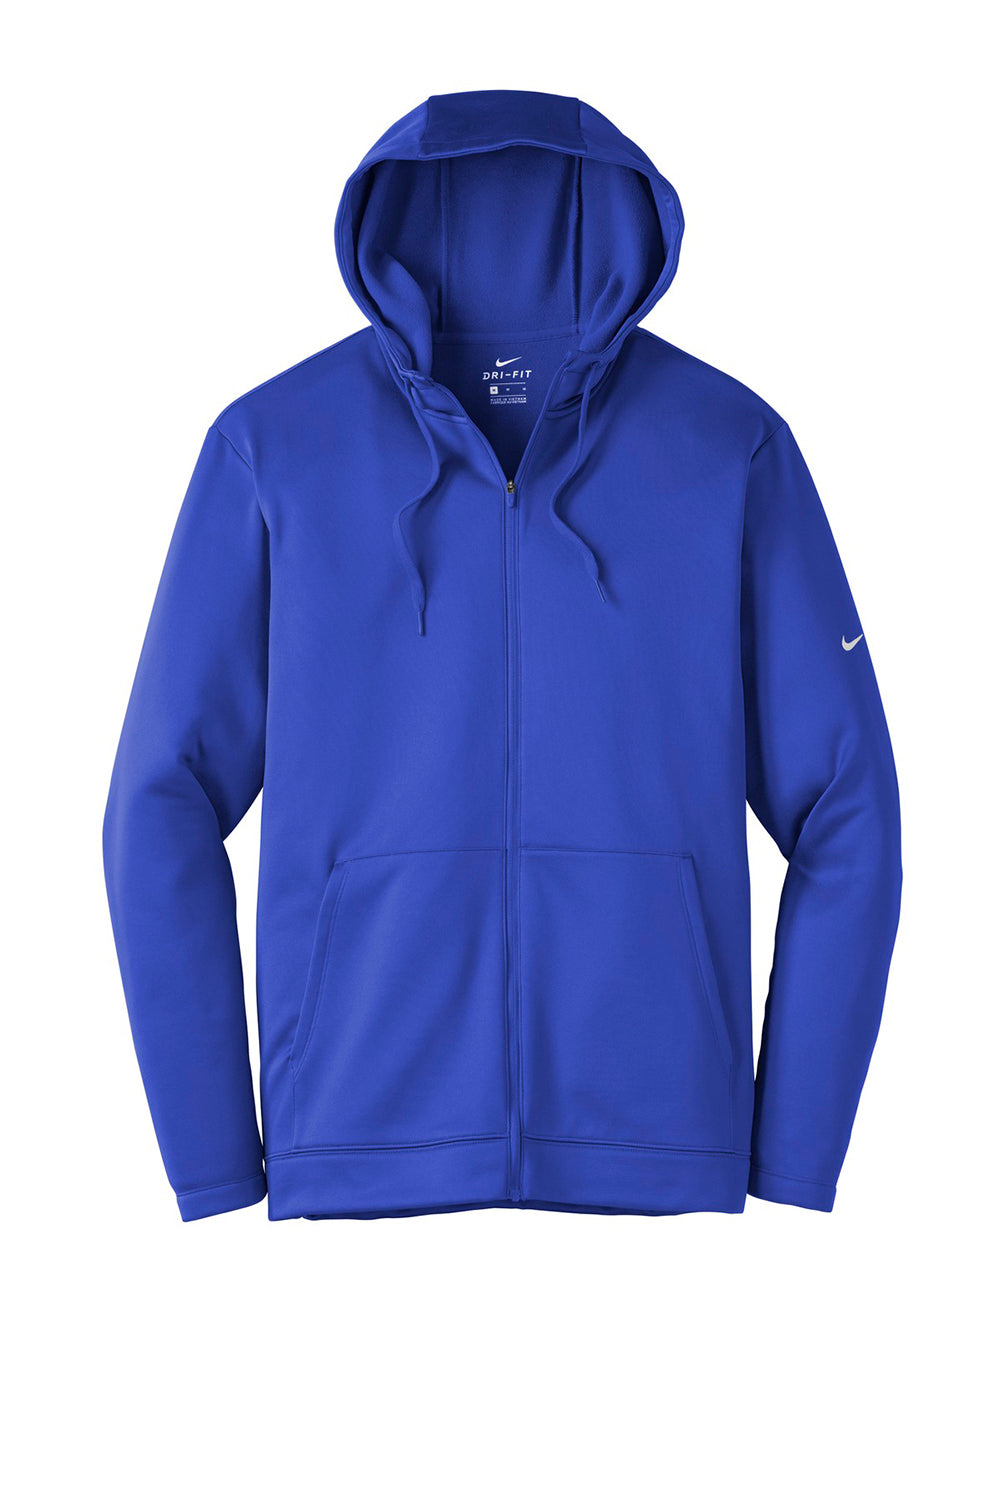 Nike NKAH6259 Mens Therma-Fit Moisture Wicking Fleece Full Zip Hooded Sweatshirt Hoodie Game Royal Blue Flat Front